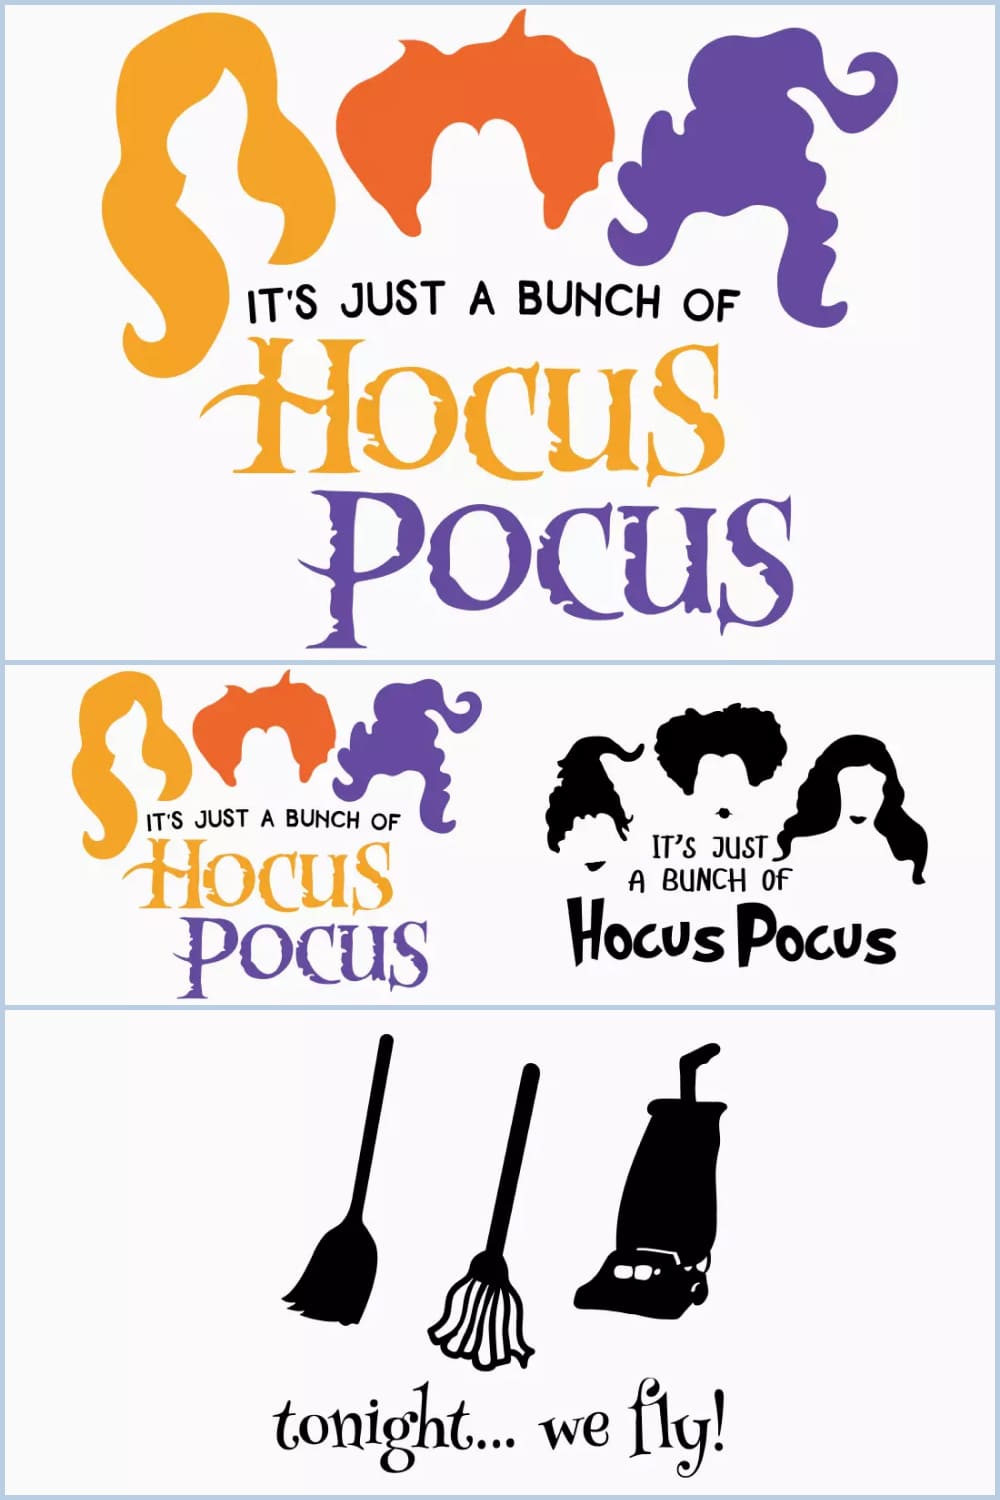 Hocus Pocus images.